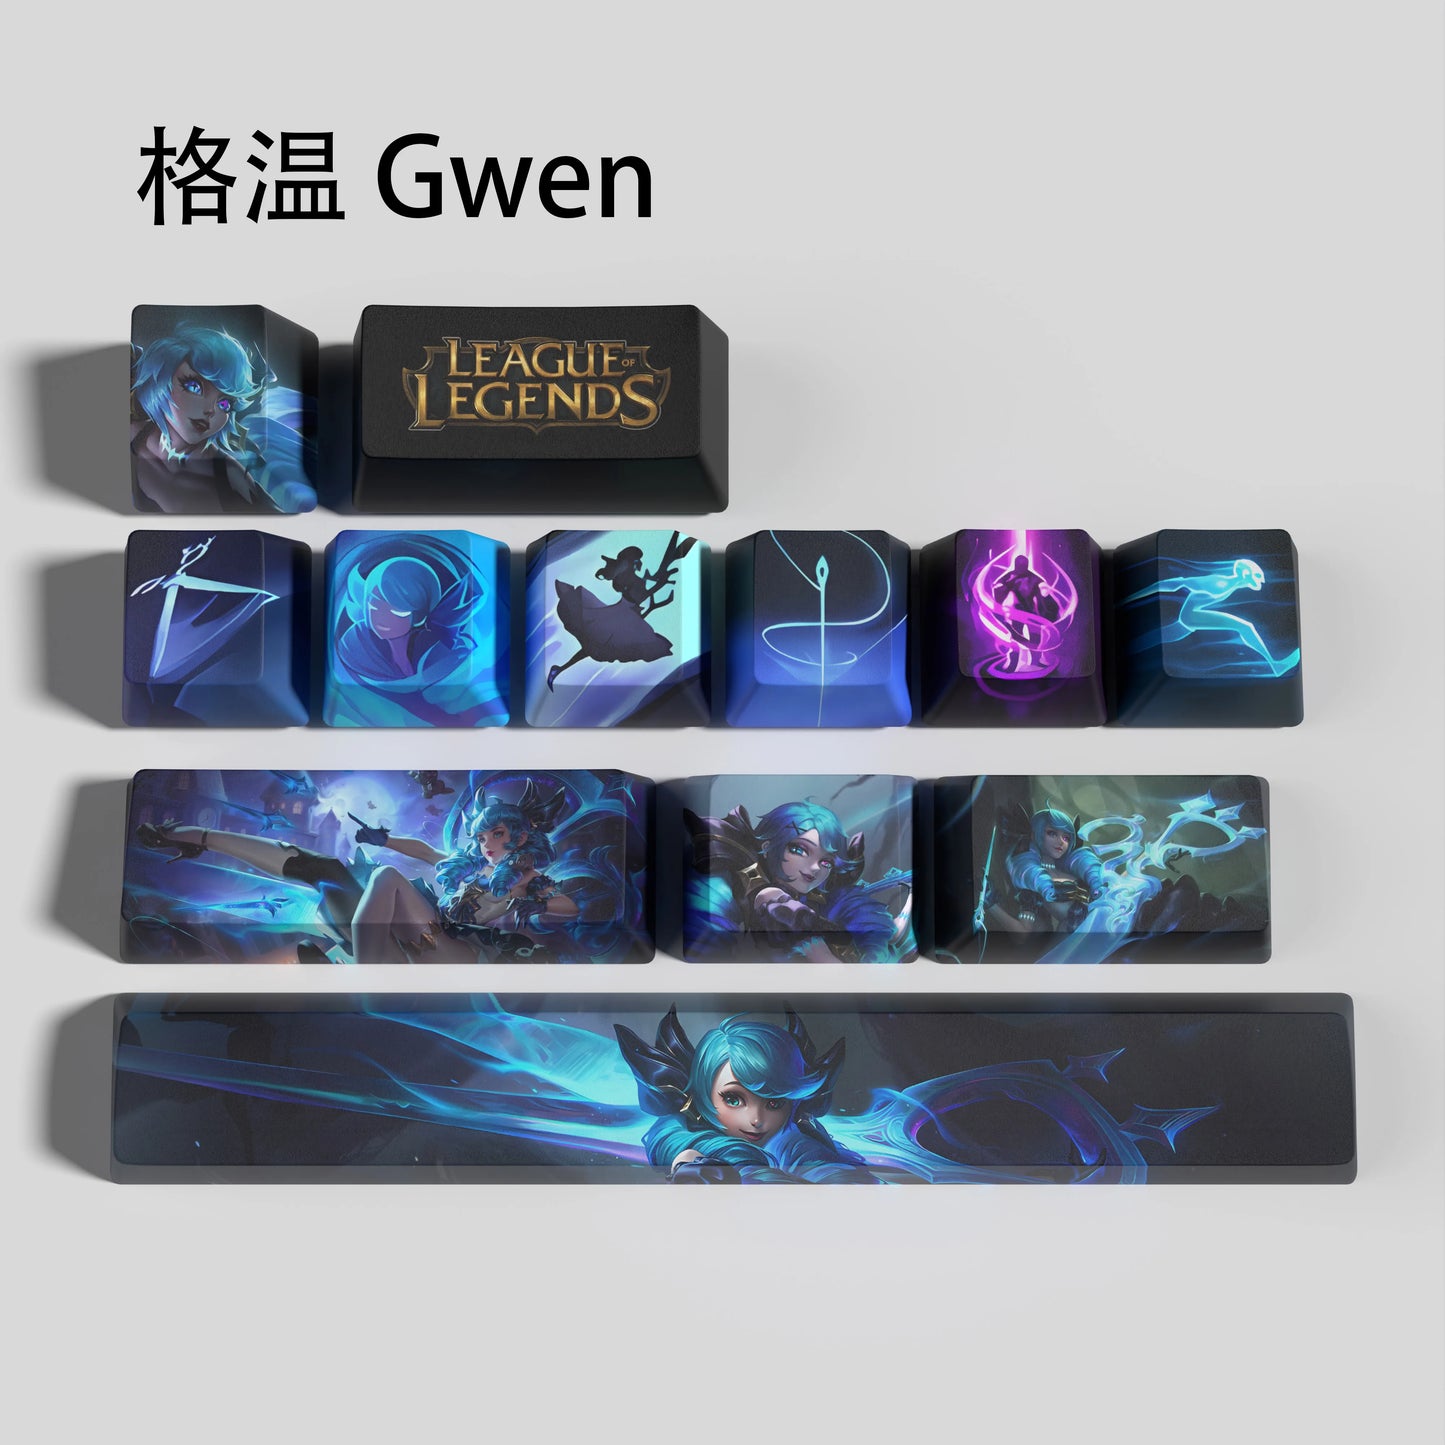 Gwen keycaps